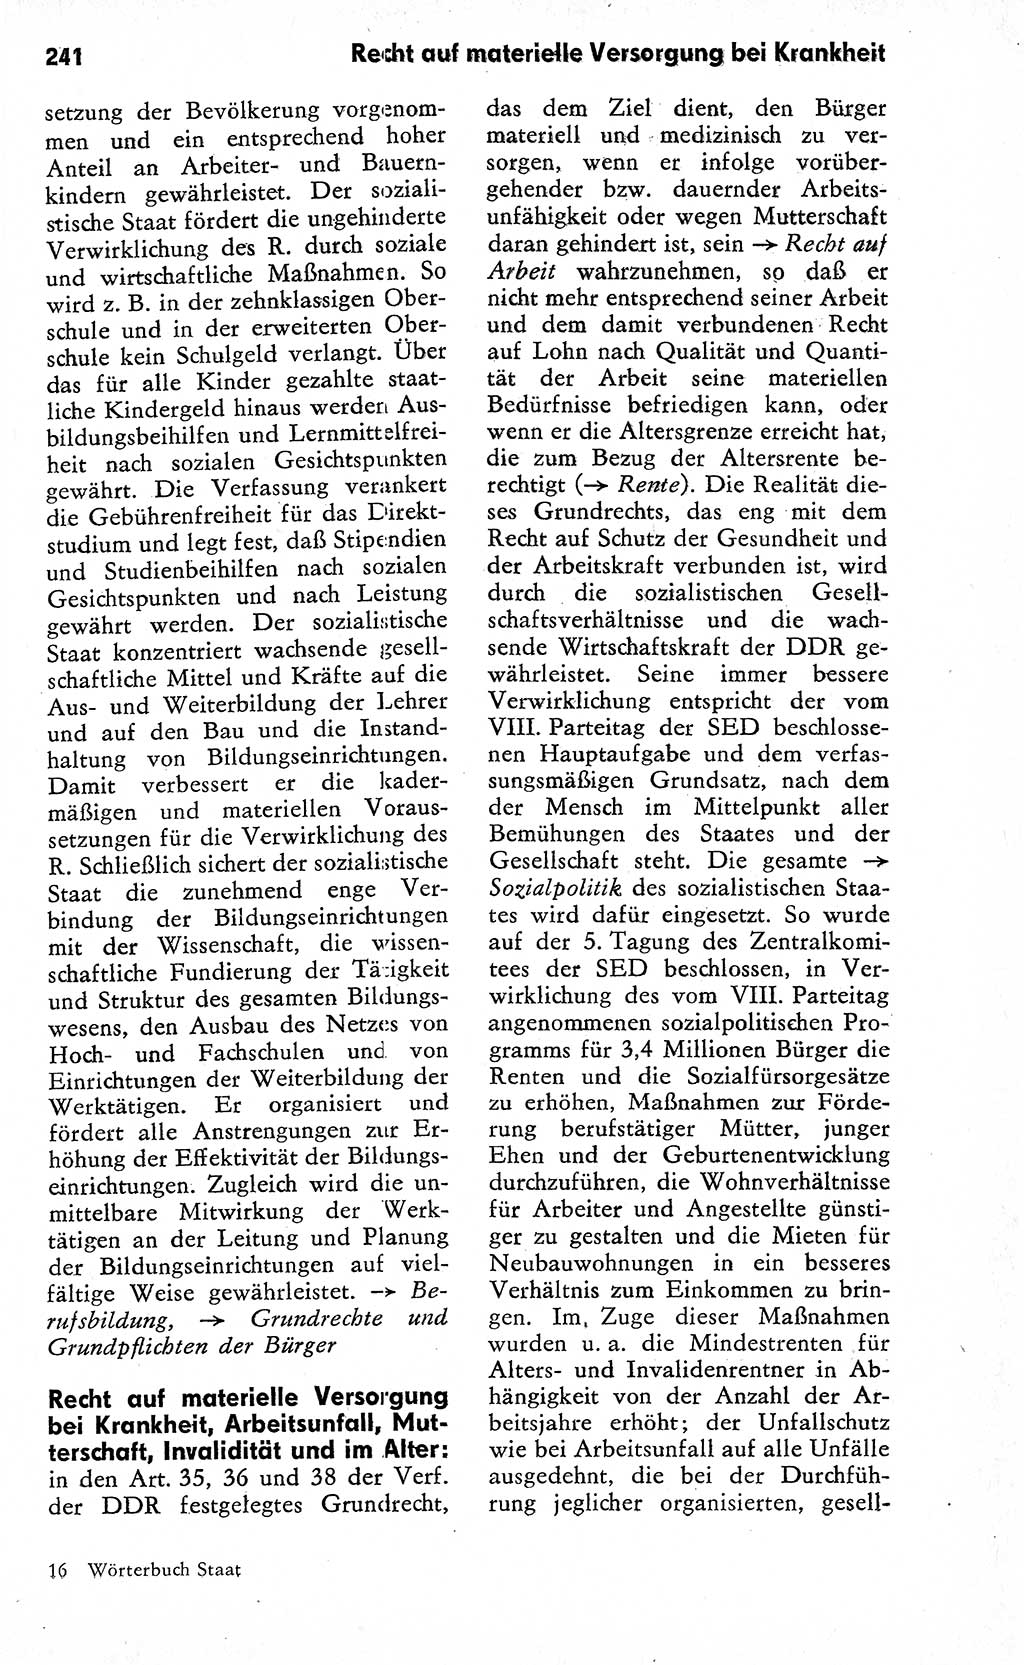 Wörterbuch zum sozialistischen Staat [Deutsche Demokratische Republik (DDR)] 1974, Seite 241 (Wb. soz. St. DDR 1974, S. 241)